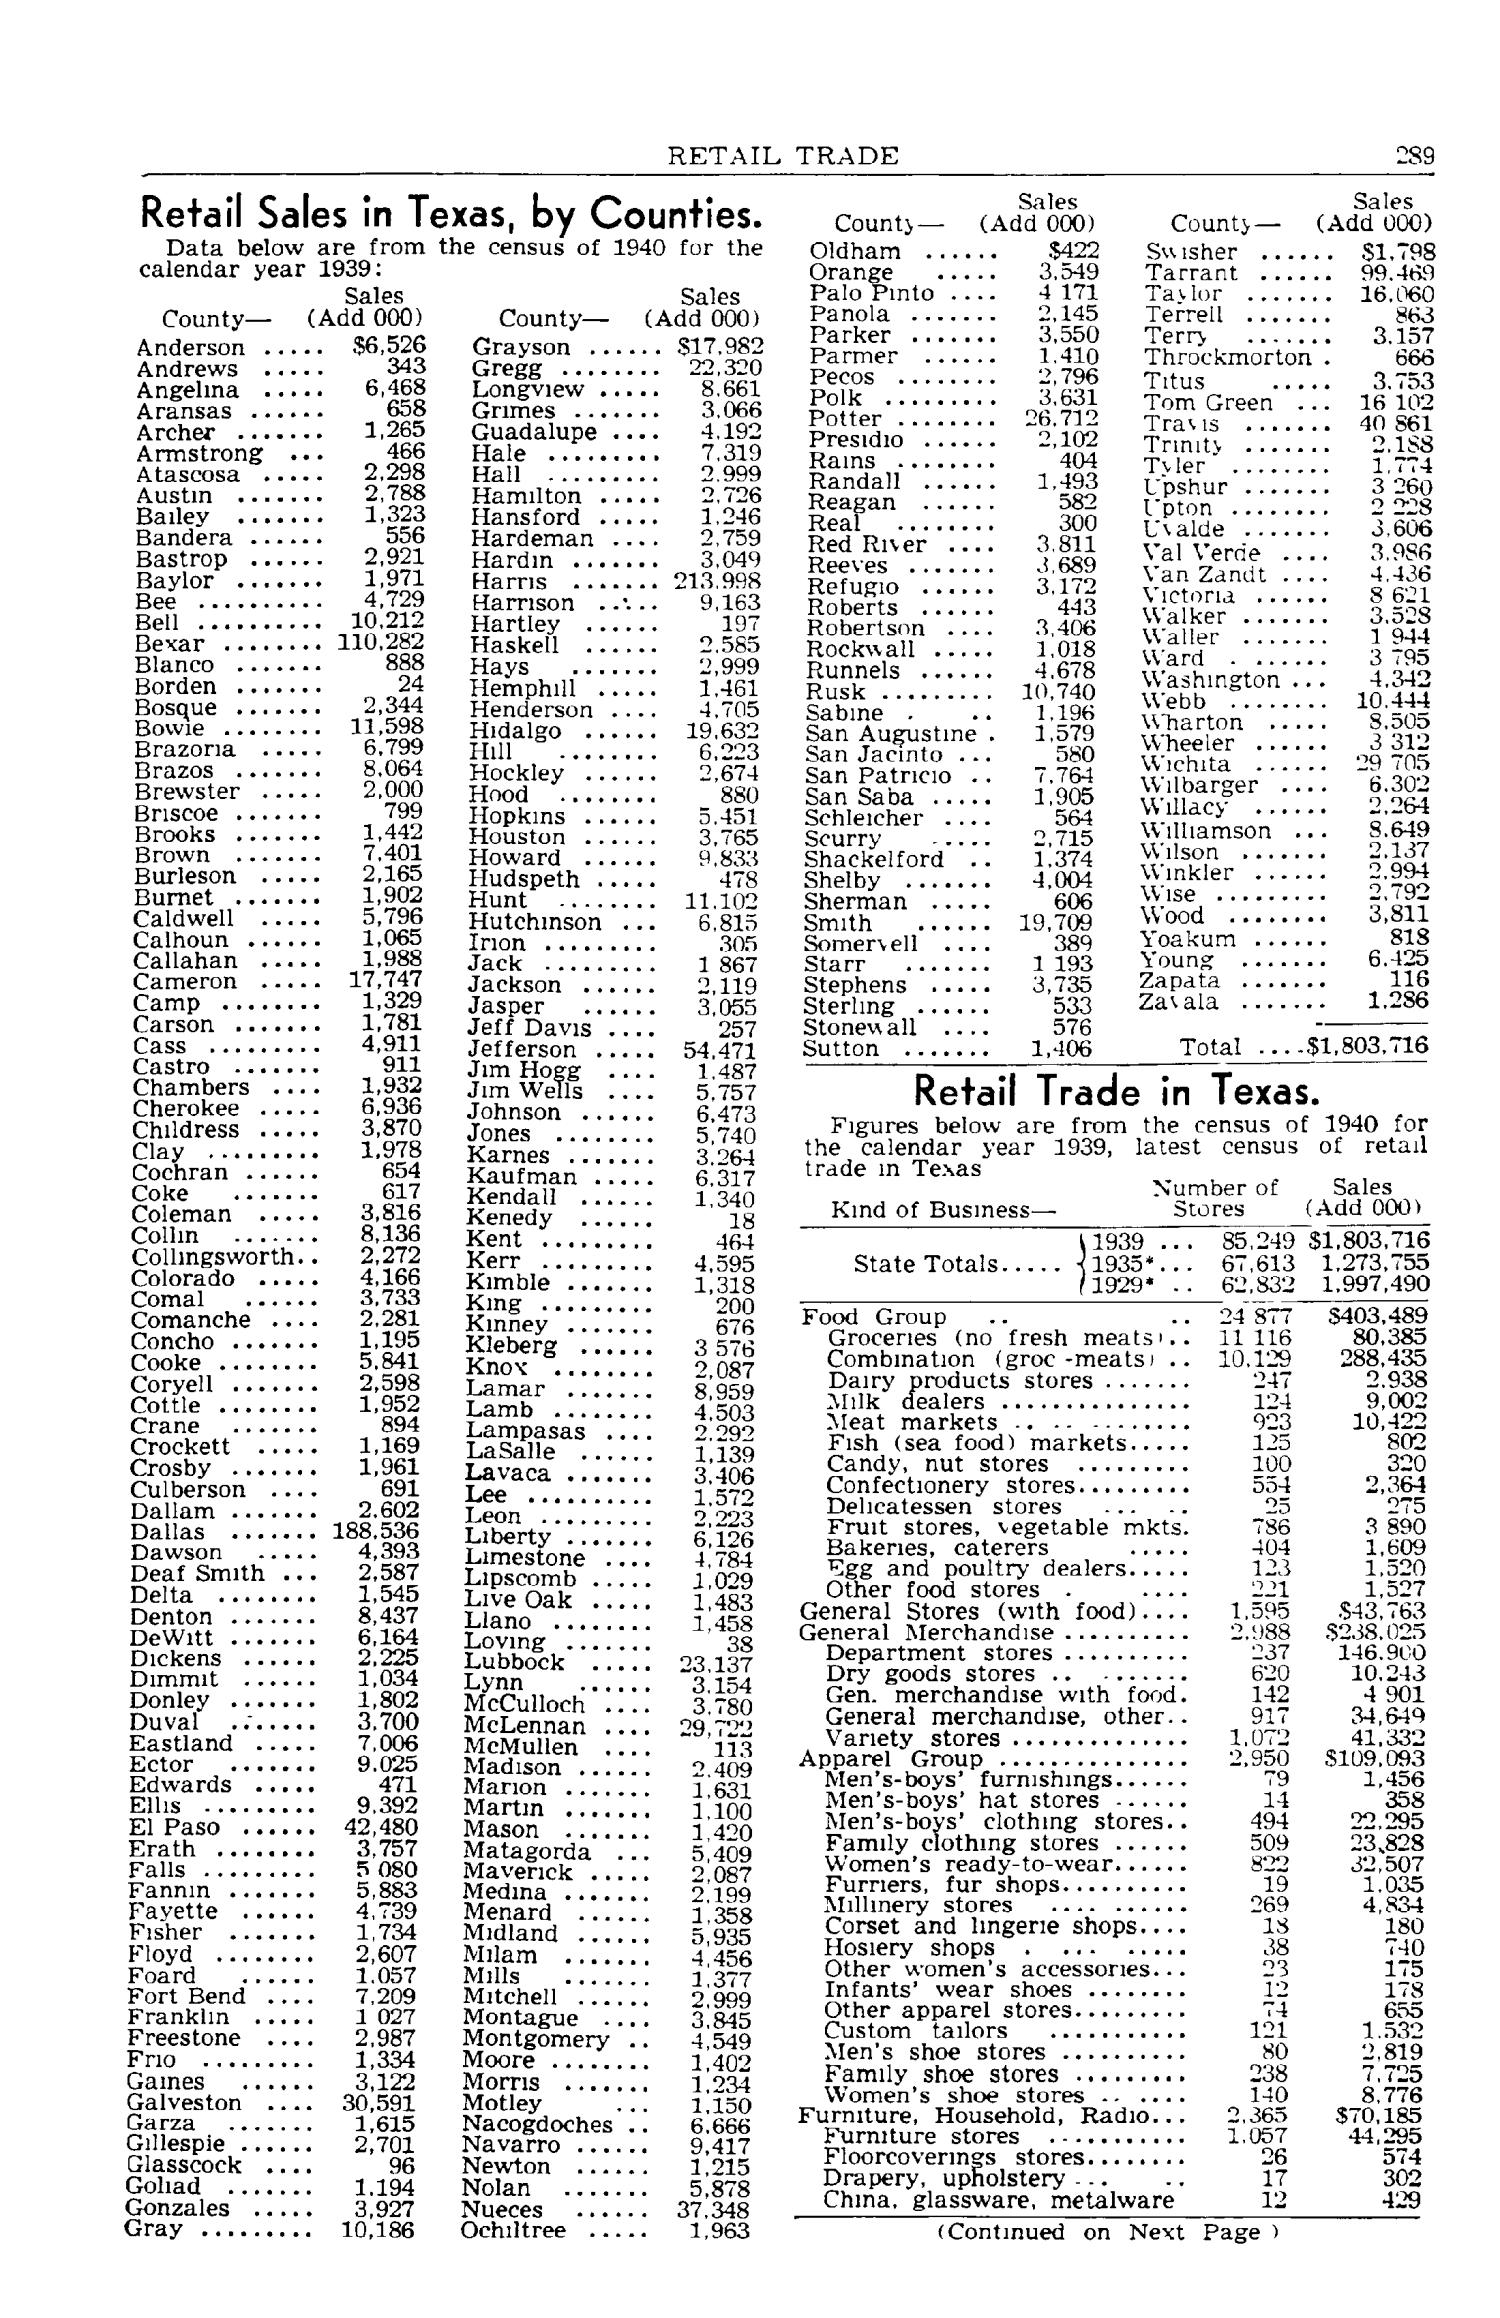 Texas Almanac, 1943-1944
                                                
                                                    289
                                                